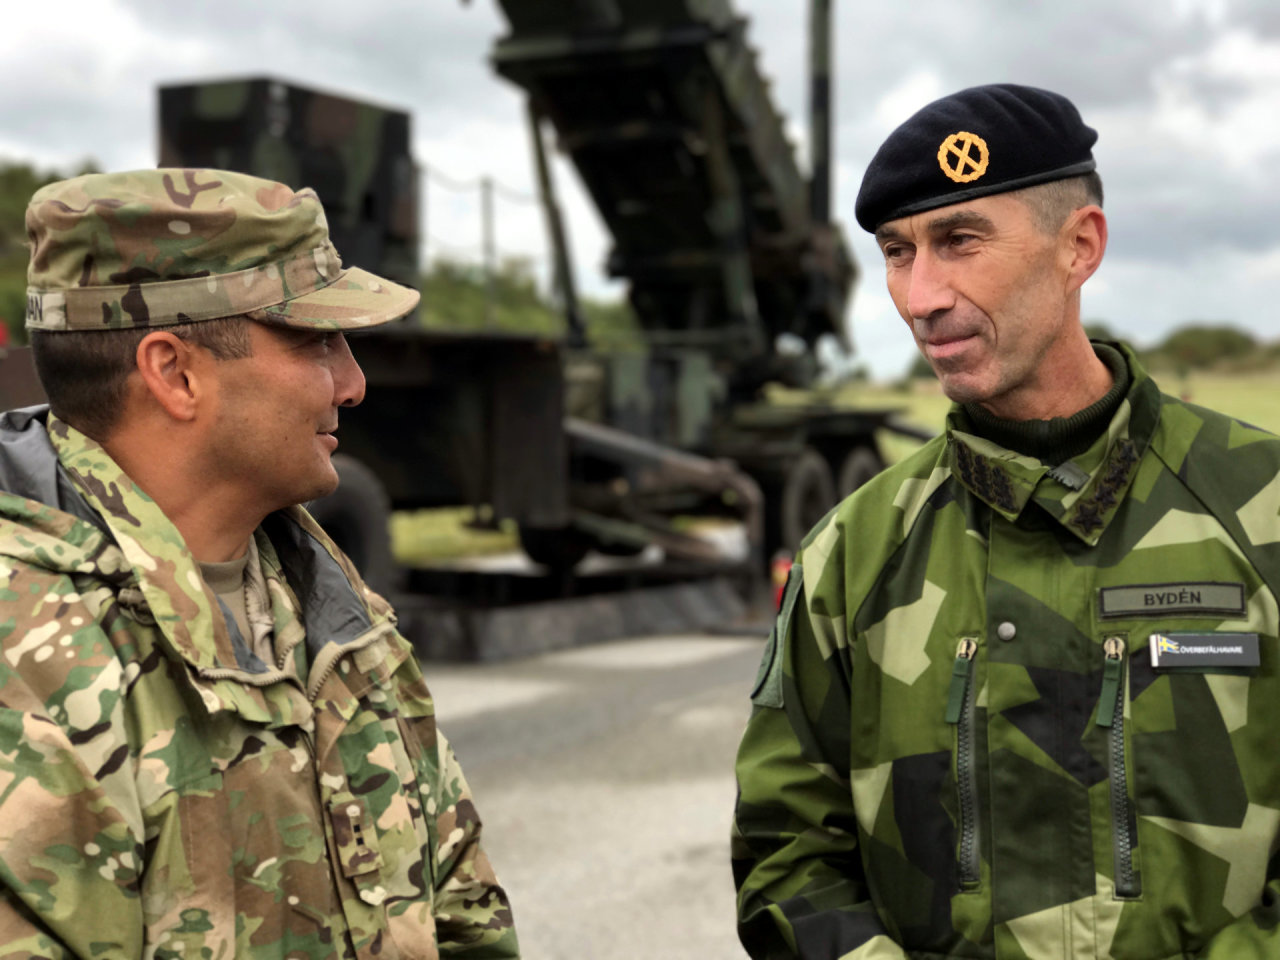 Švedijos generolas: jei V.Putinas įsiverš į šią salą, kils grėsmė NATO šalims iš jūros